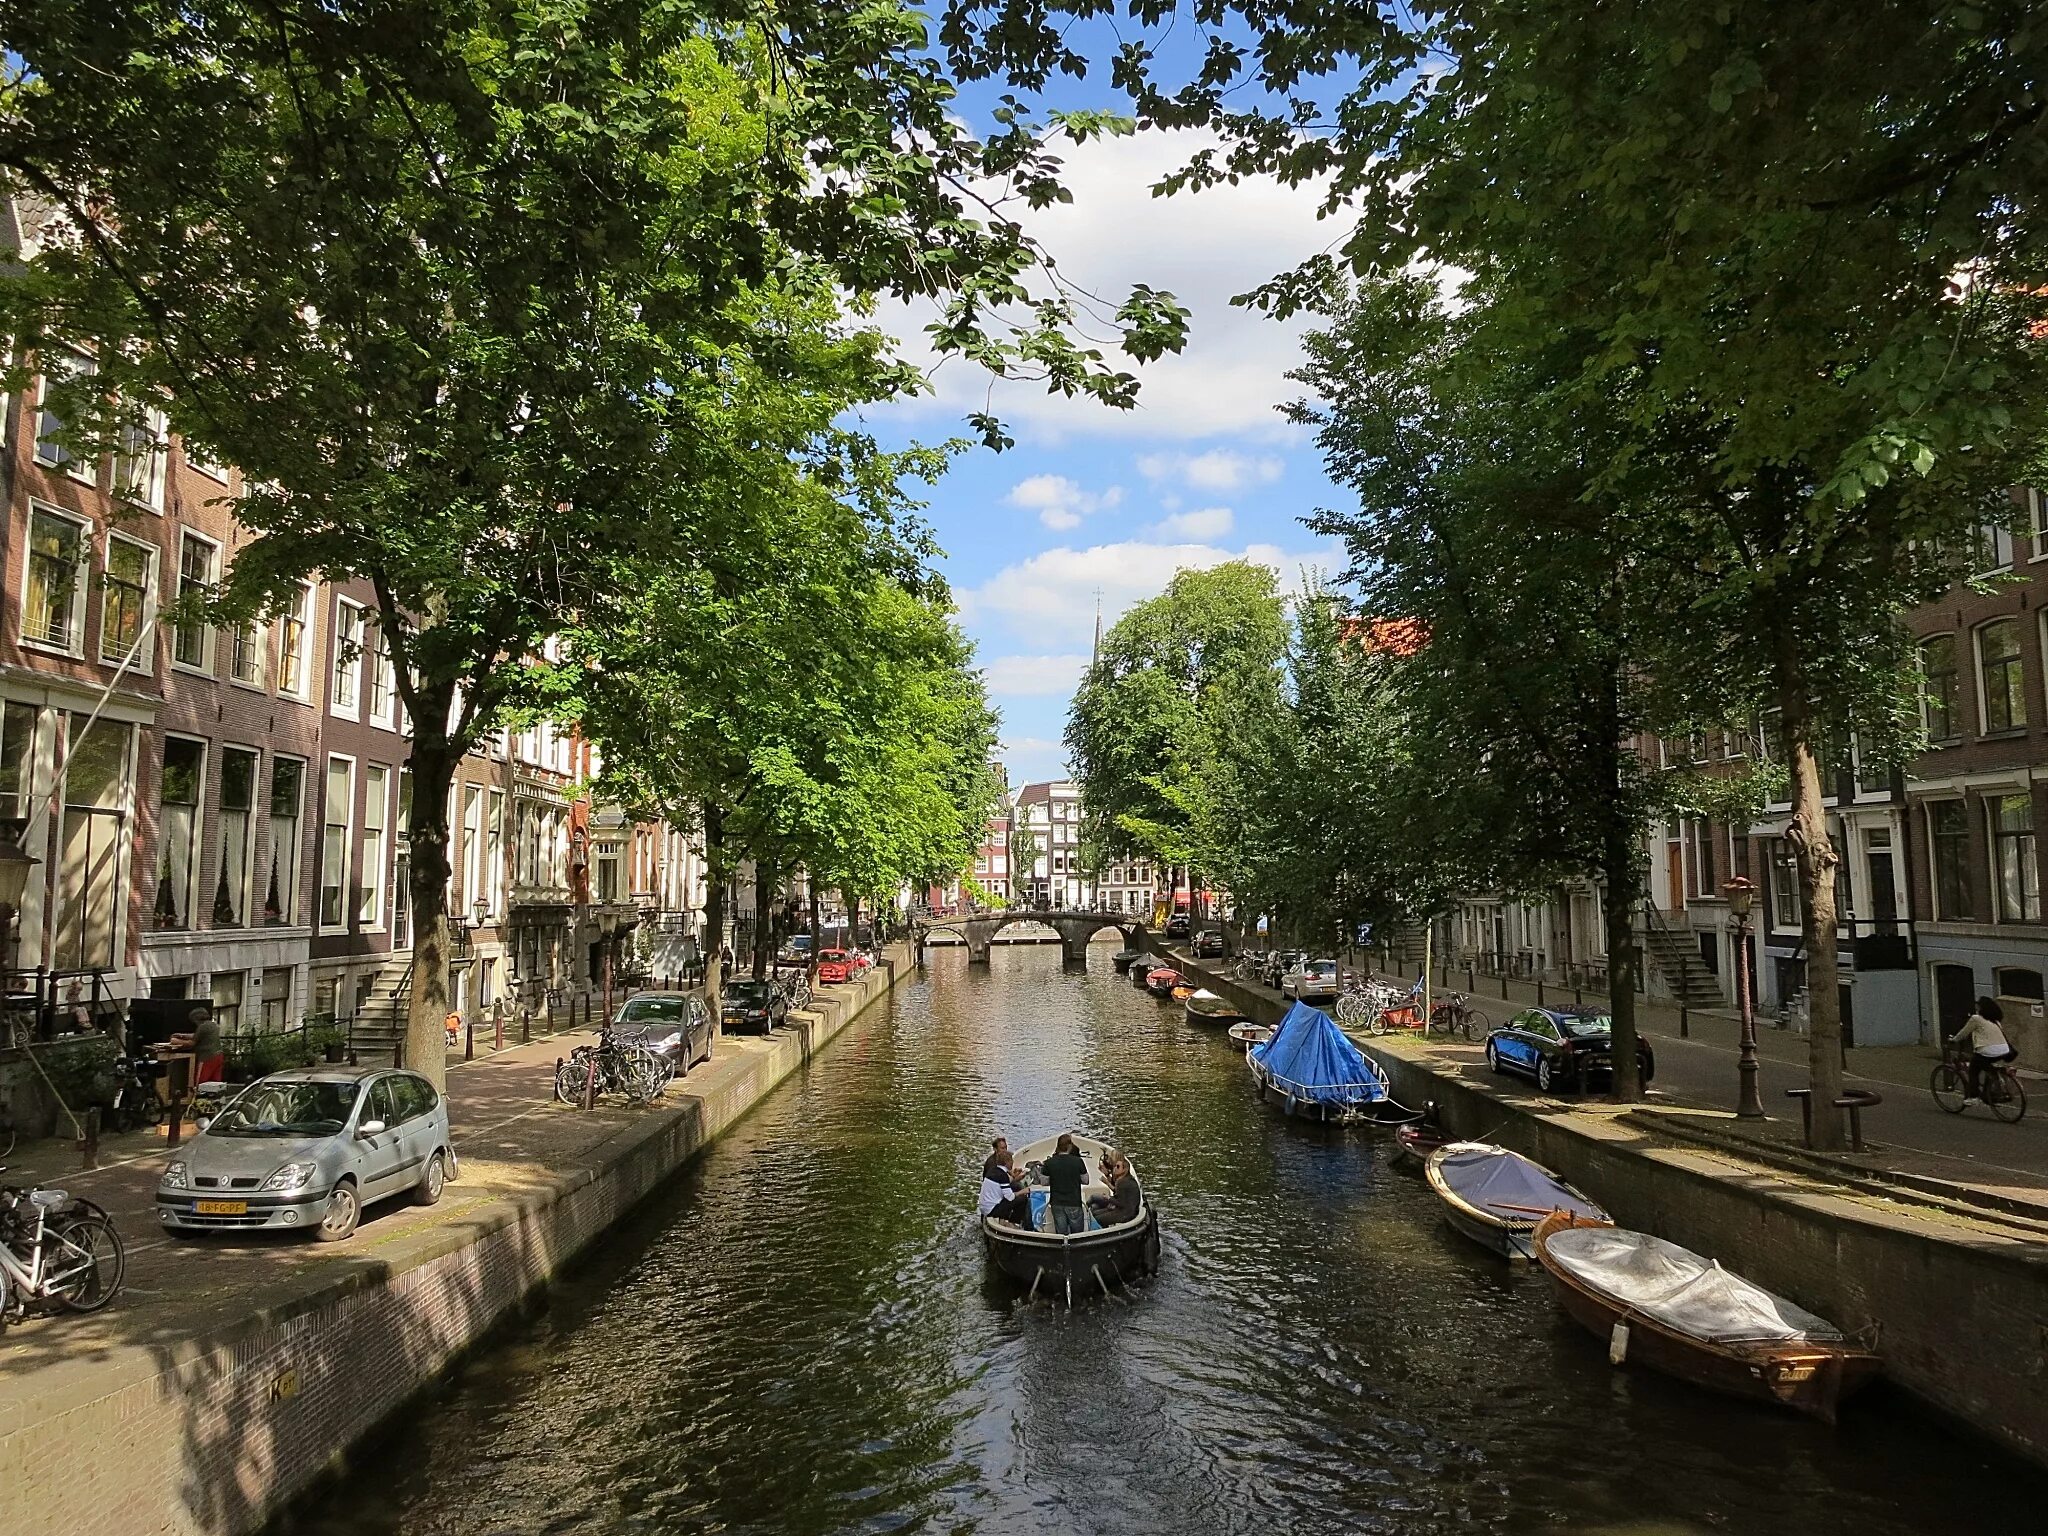 Canal s. Канал Херенграхт Амстердам. Амстердам канал Кайзерграхт. Канал Принсенграхт Амстердам. Нидерланды каналы Амстердама.